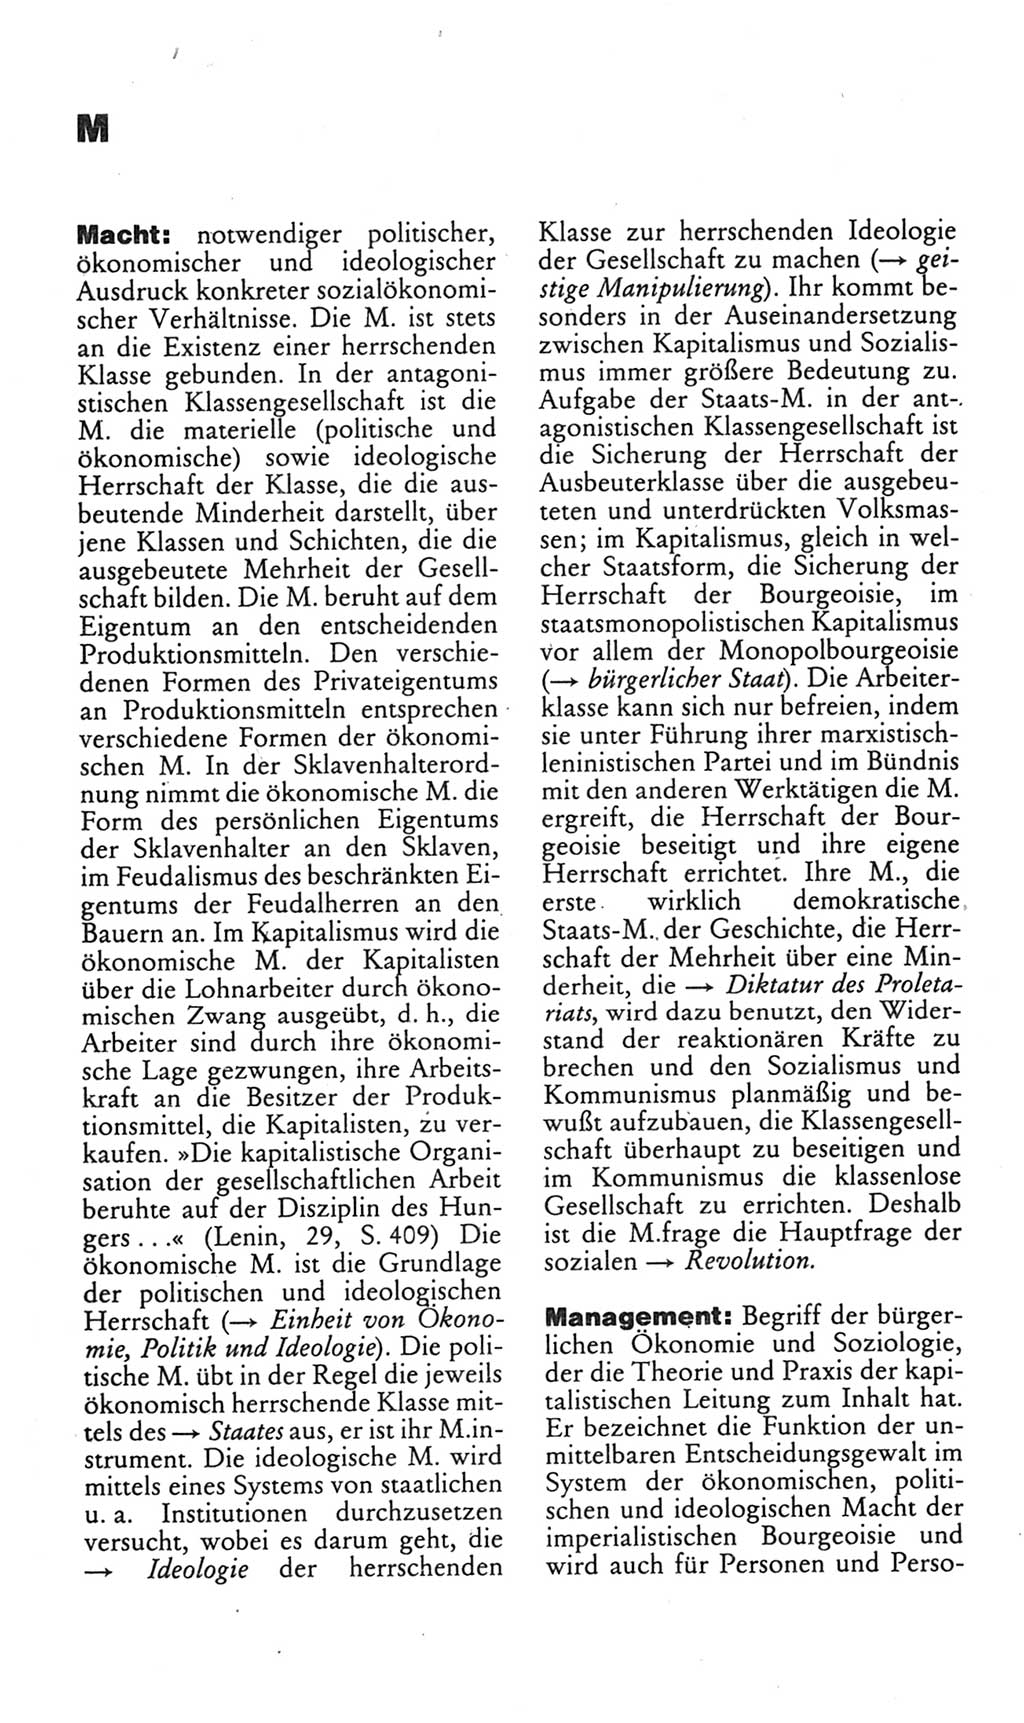 Kleines politisches Wörterbuch [Deutsche Demokratische Republik (DDR)] 1985, Seite 576 (Kl. pol. Wb. DDR 1985, S. 576)